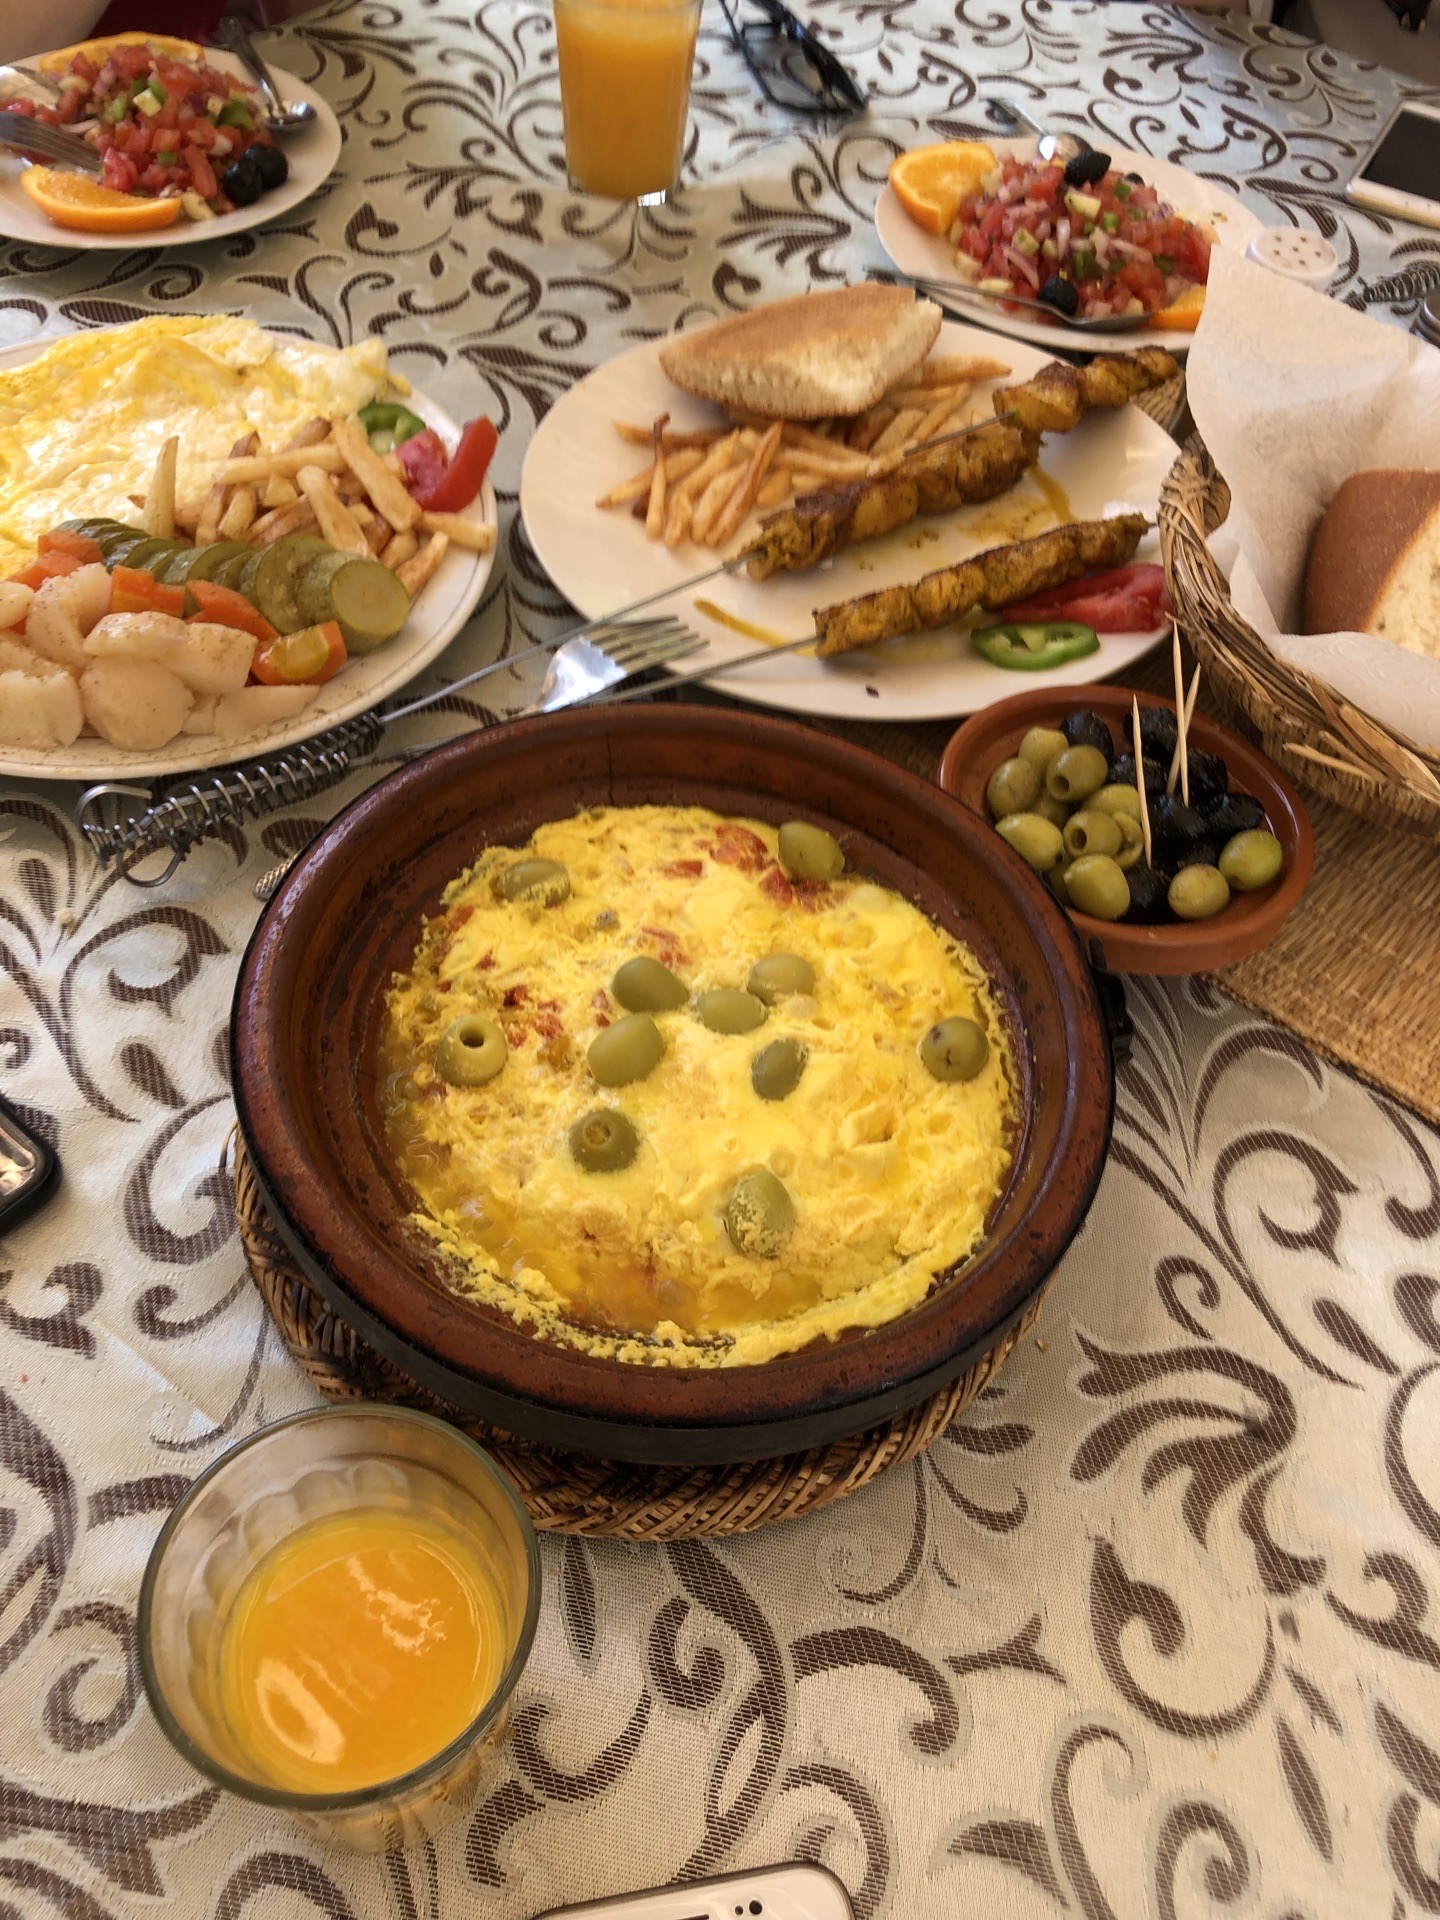 走完摩洛哥一程，一路上的餐。旅行的美妙滋味就是你可能很喜欢吃辣的东西，但是当下你必须吃下你眼前的甜食